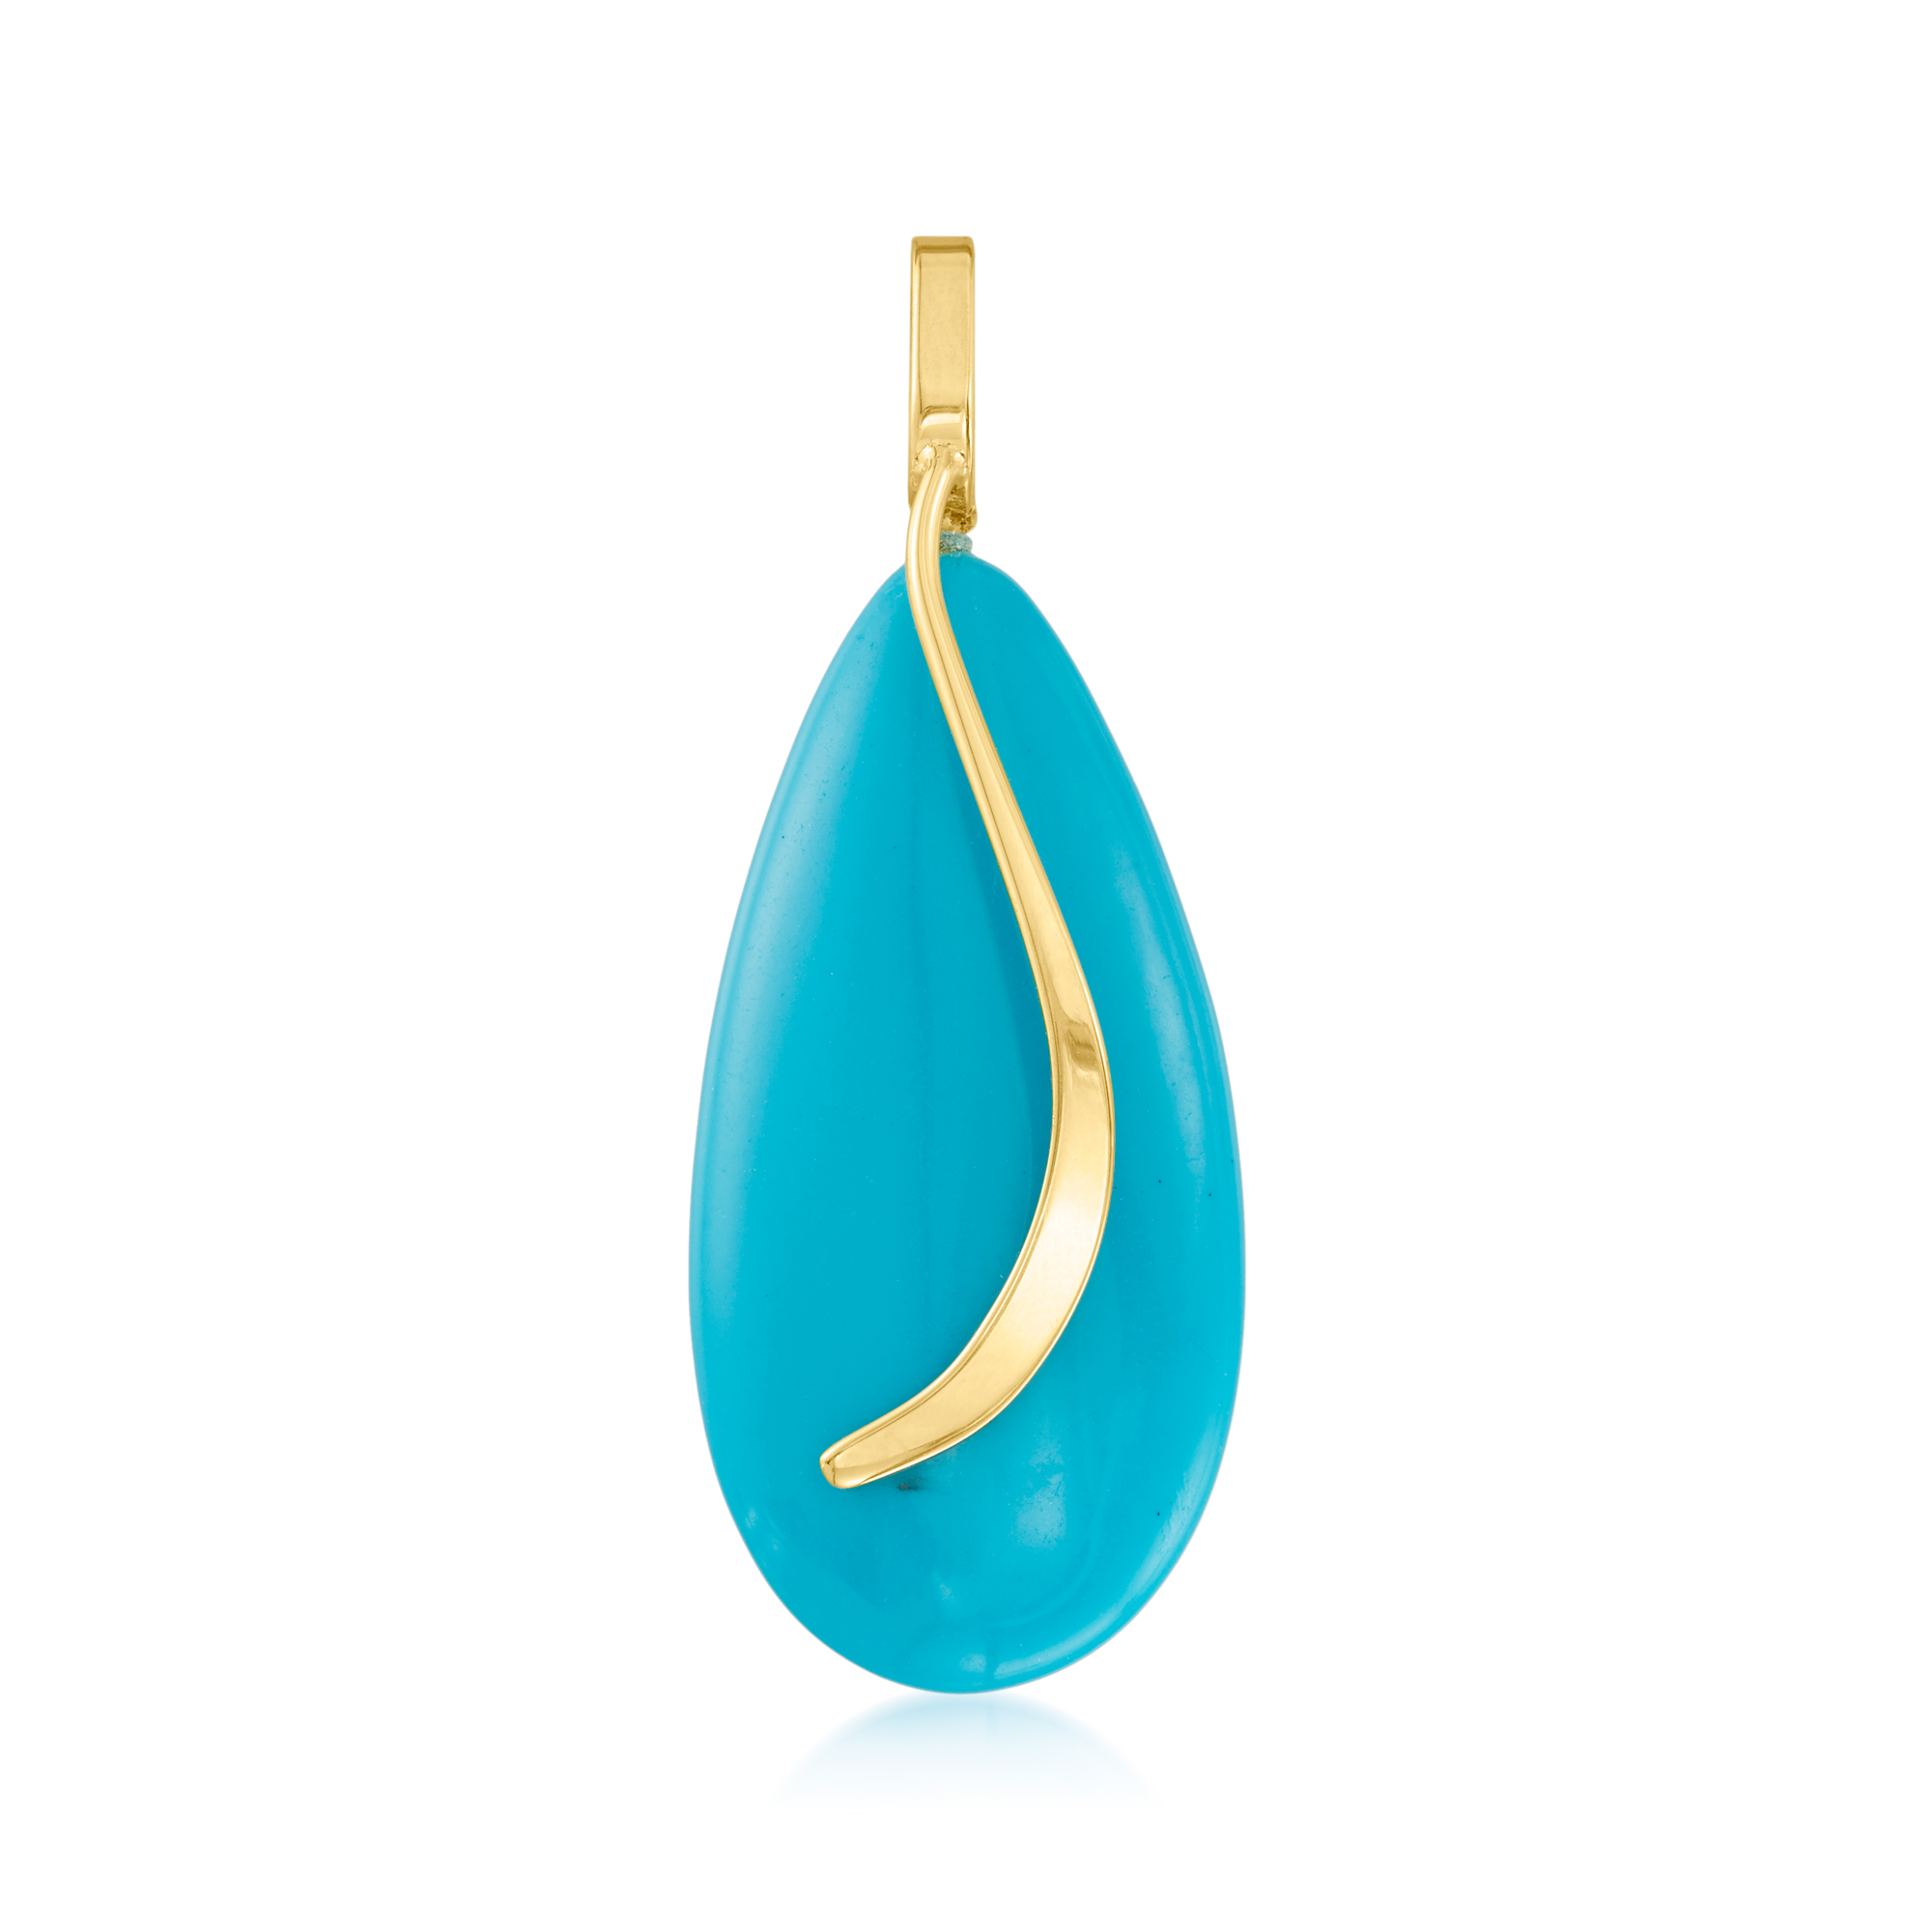 4mm rounded pendant gemstone Turquoise Necklace Yellow GOLD 14K Dainty pendant Turquoise Necklace genuine turquoise pendant